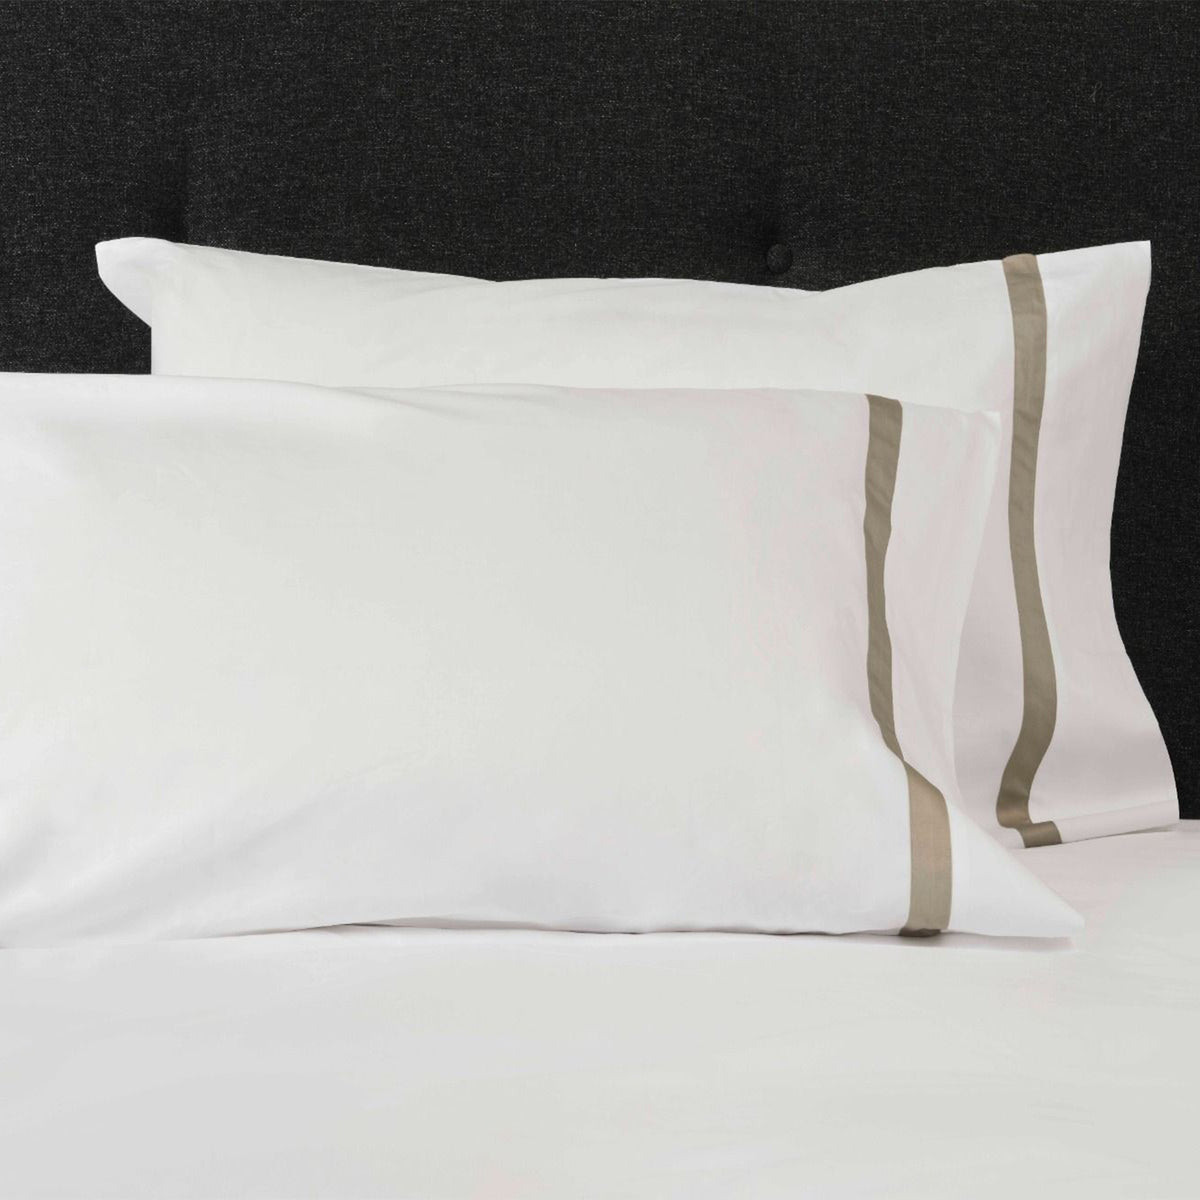 Pair of Pillowcases of Signoria Pegaso Bedding in White/Khaki Color